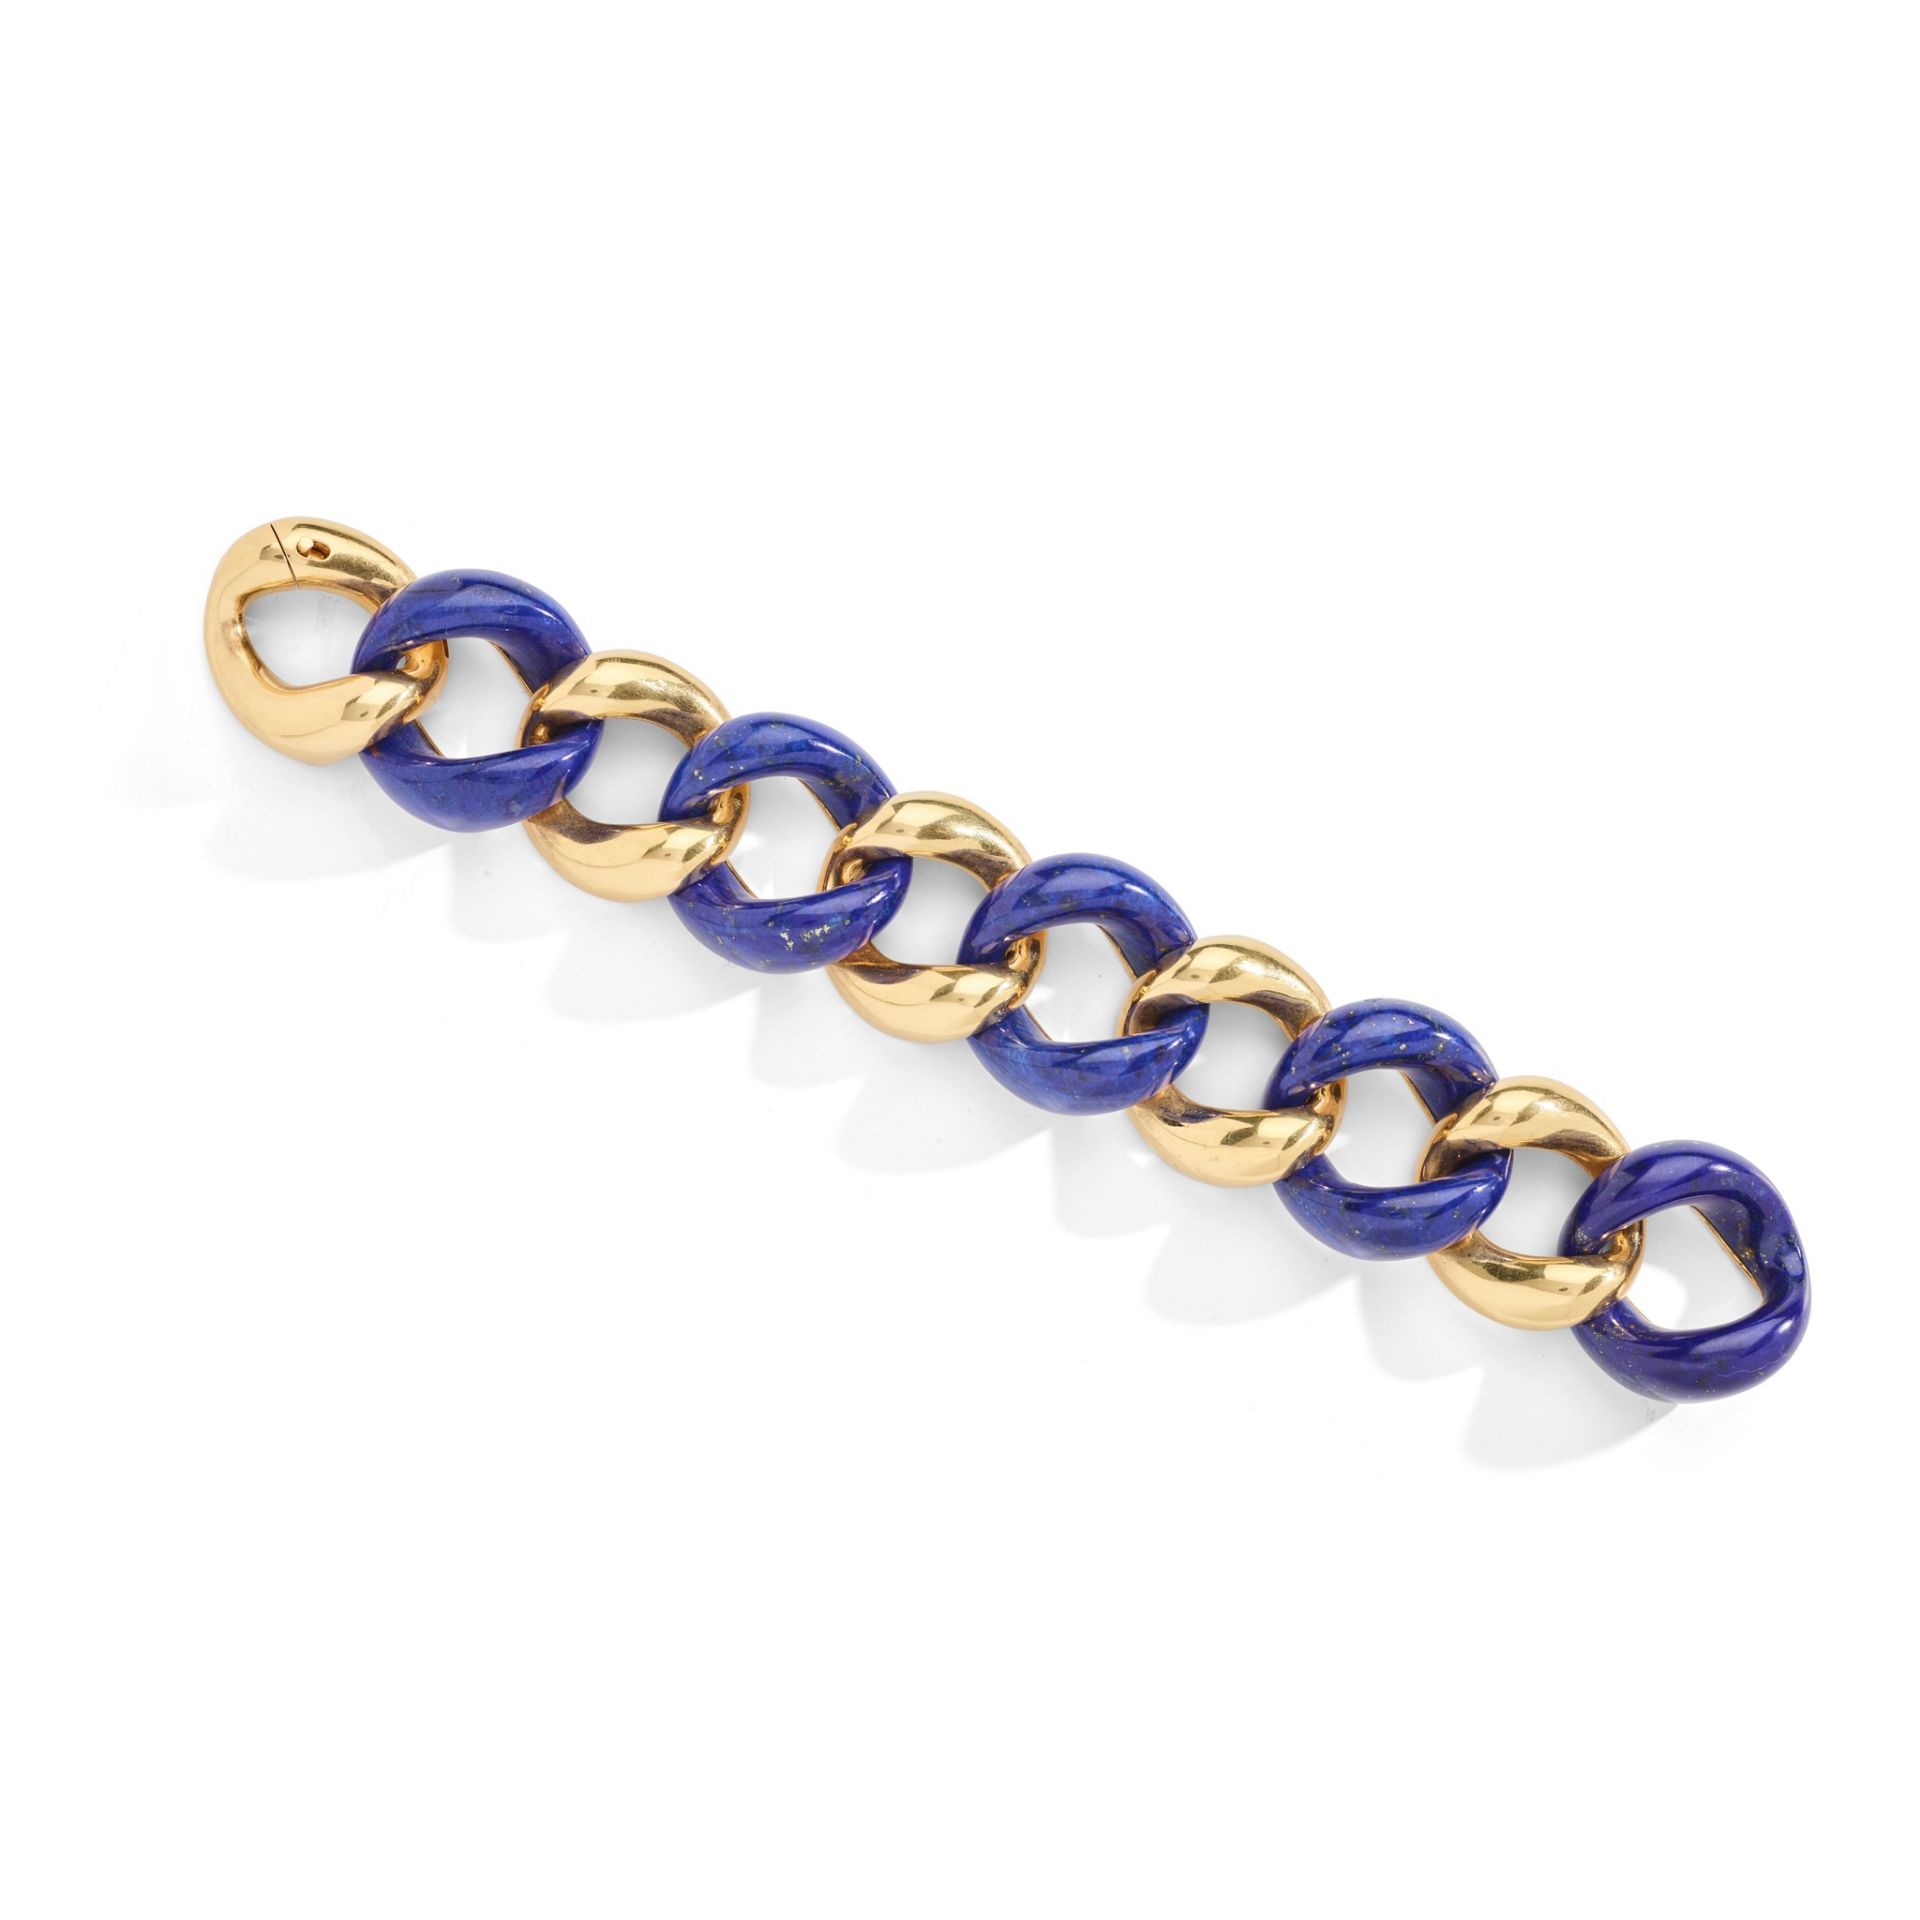 A lapis lazuli bracelet, by Seaman Schepps